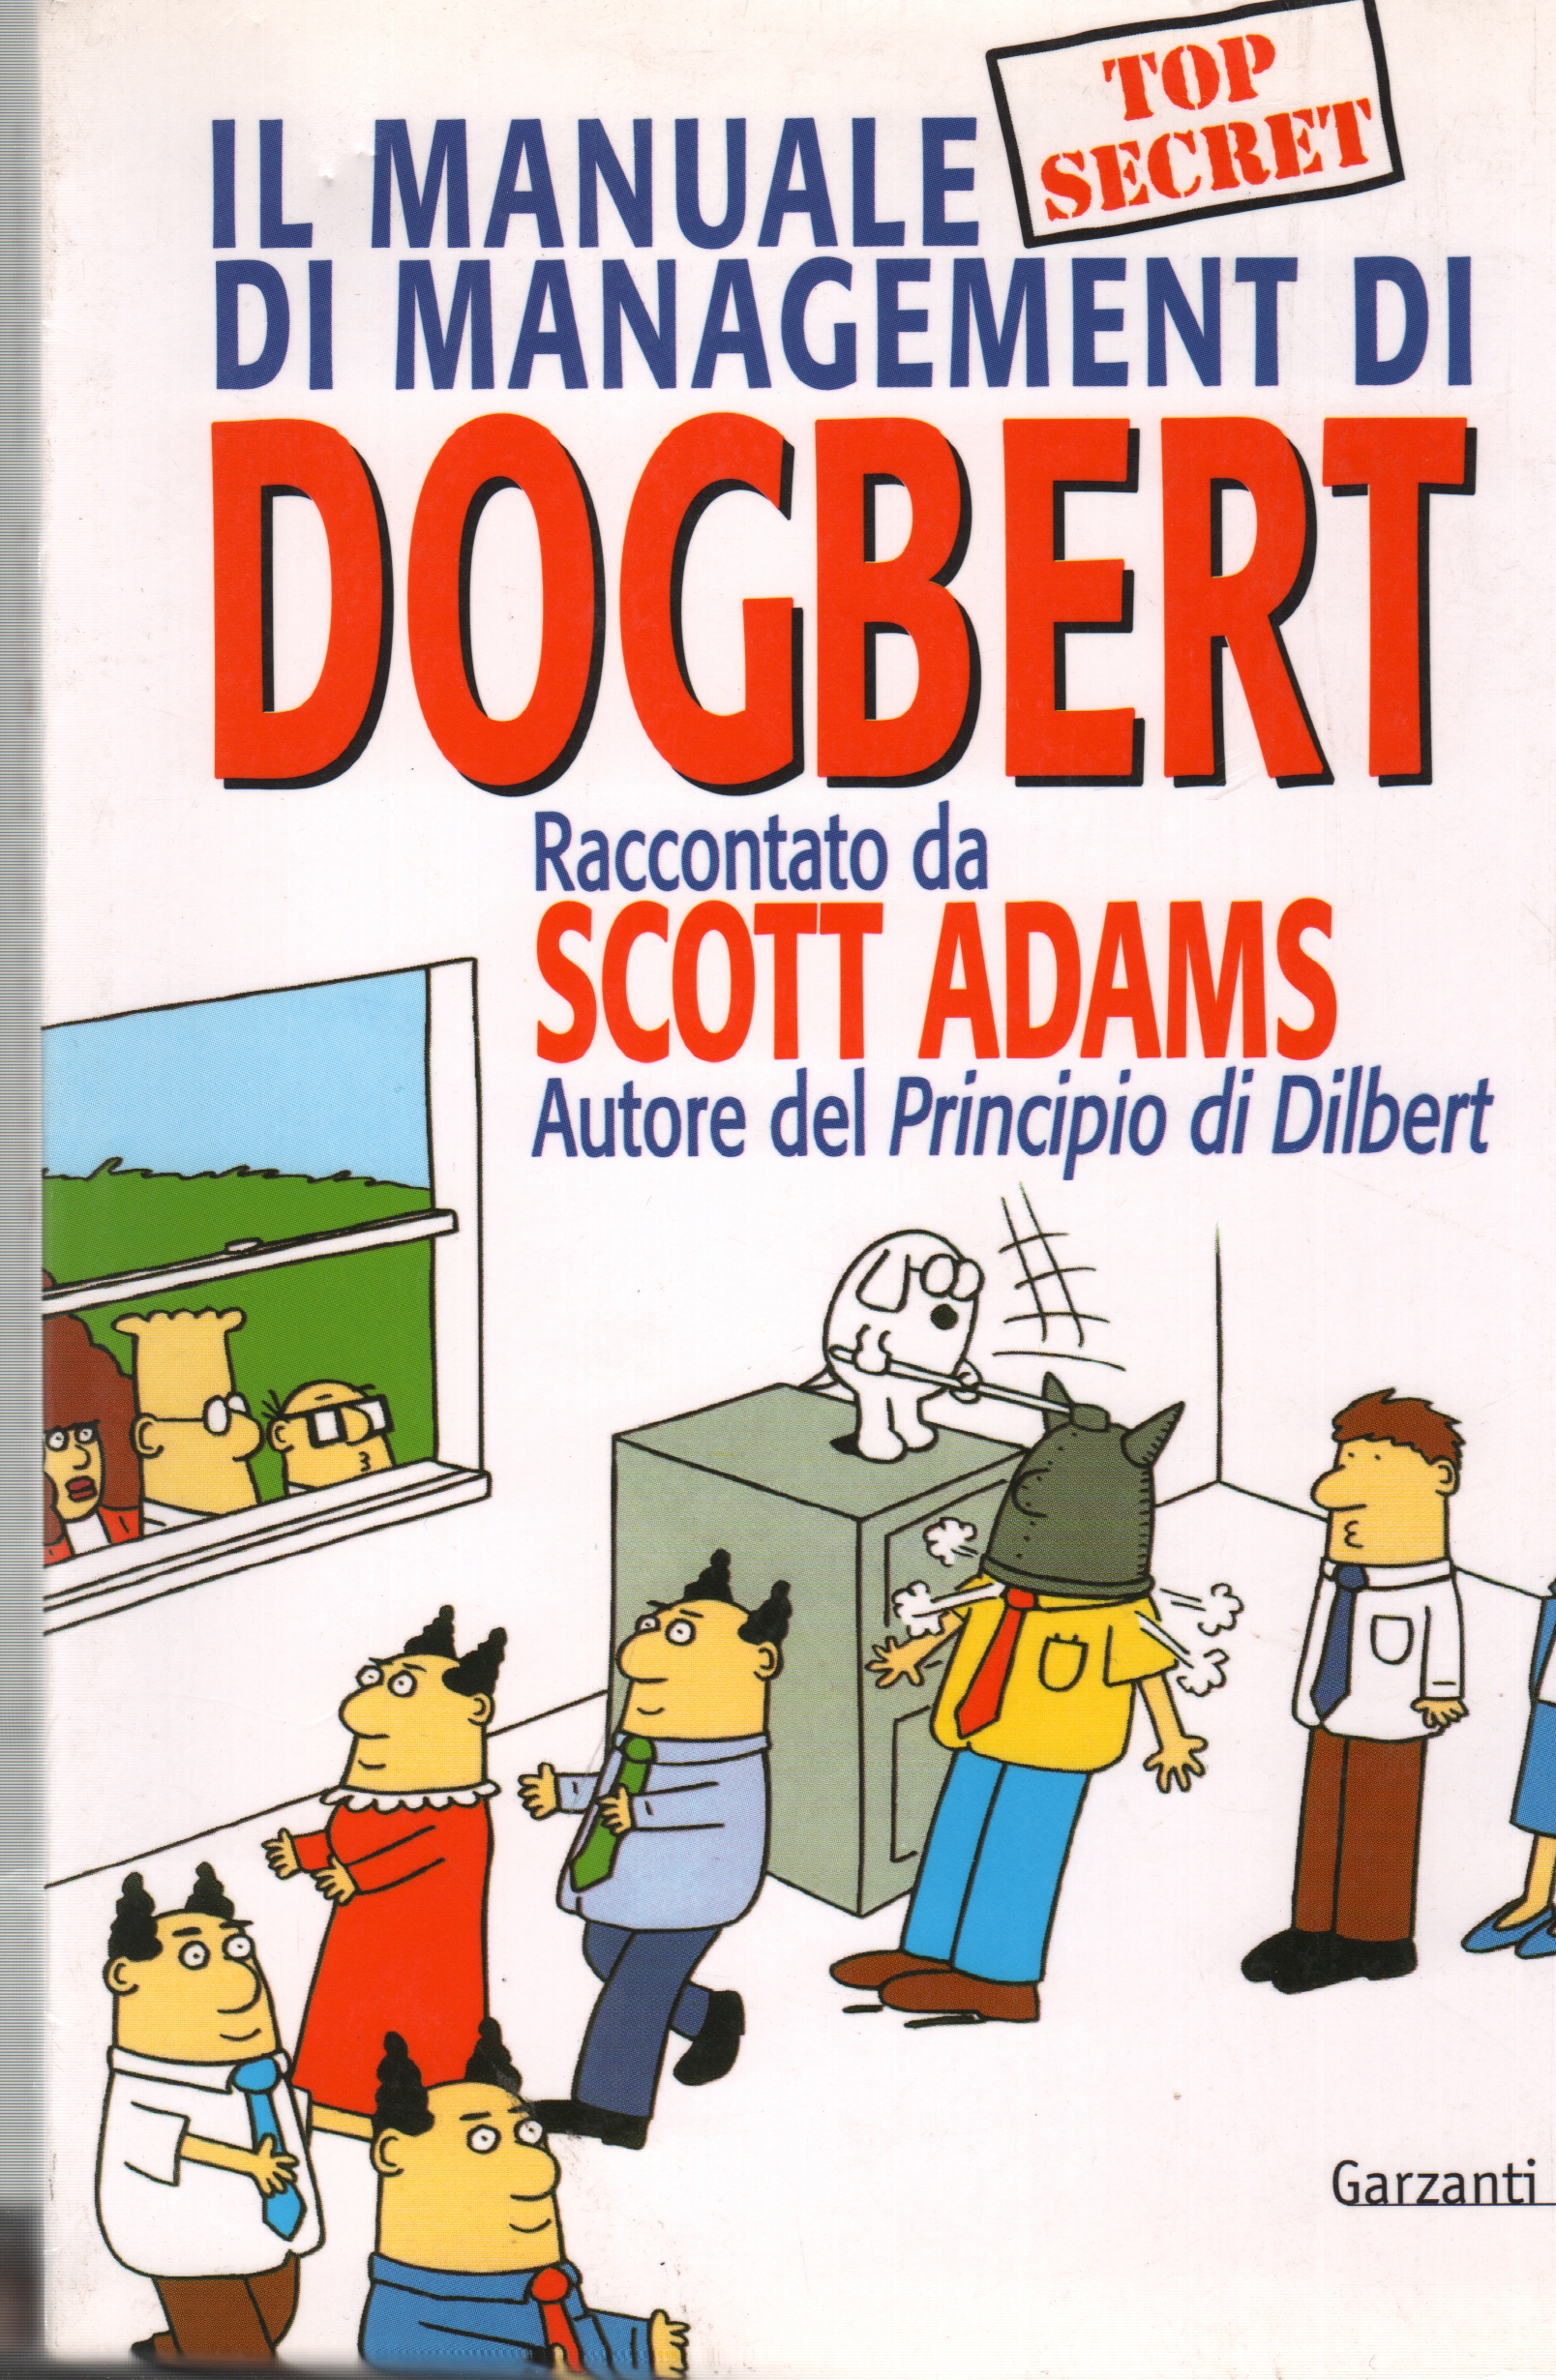 manual de gestión de dogbert